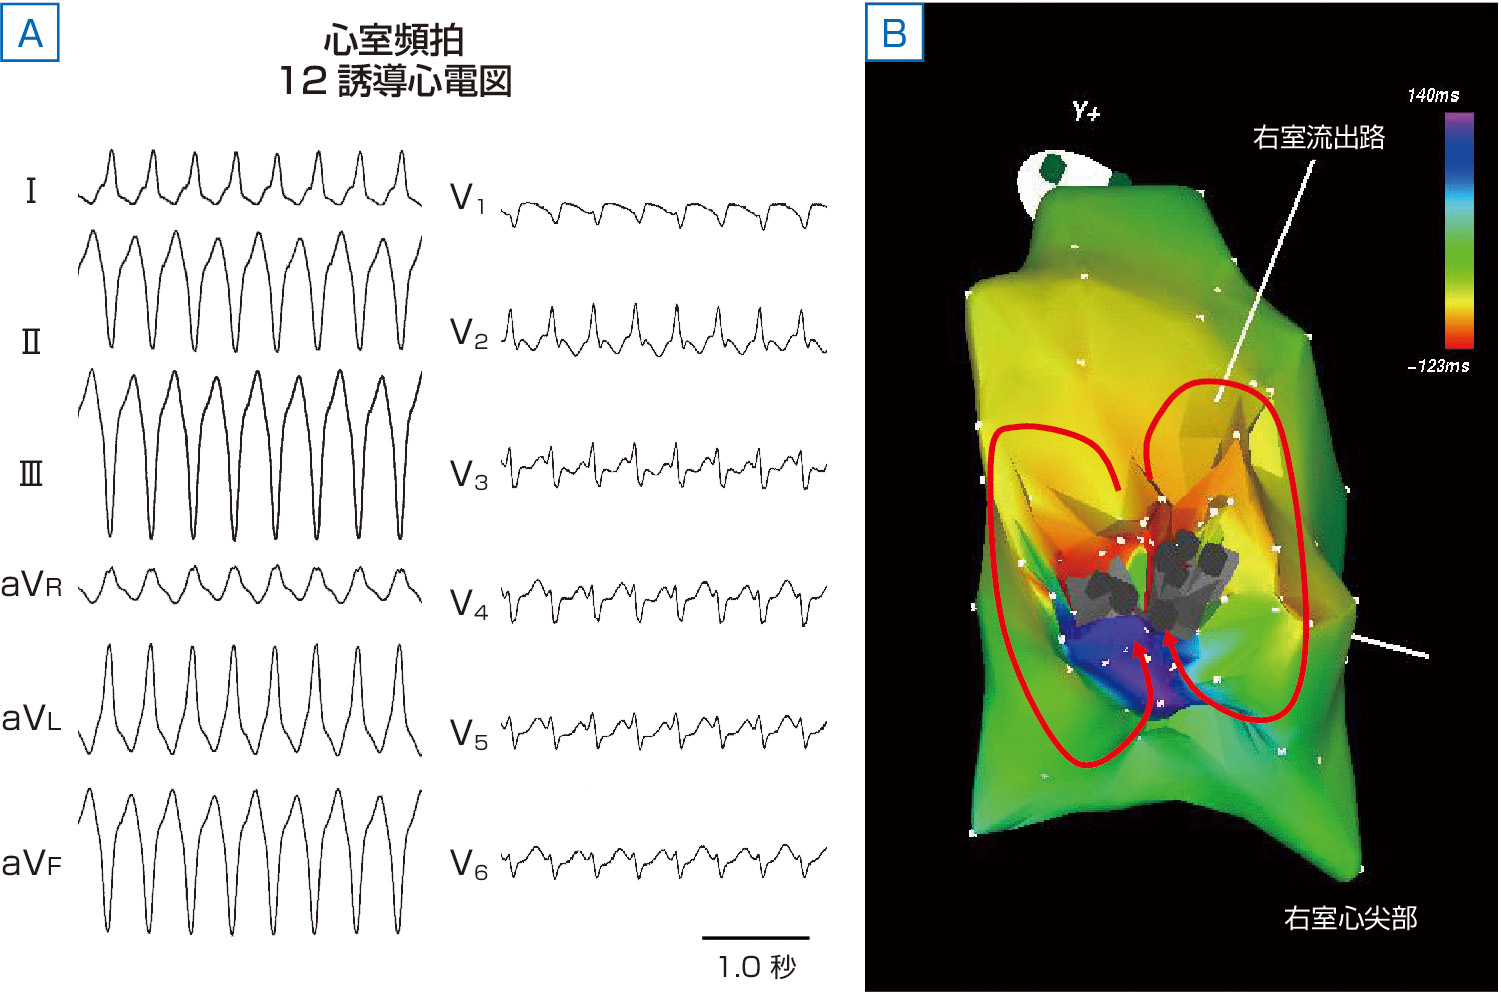 ⓔ図8-6-3　単形性持続性心室頻拍におけるリエントリー回路の回旋パターン A：不整脈原性右室心筋症にて記録された心室頻拍時の12誘導心電図 (左) と頻拍中に記録された心室の伝導パターンを示す．心電図では自然停止しない持続性心室頻拍を示し，発生機序としてリエントリーが示唆される． B：3Dマッピングシステムを用いて心室頻拍中に描かれた伝導パターン．右室下壁自由壁に灰色で示す2つの瘢痕が存在し，その間に存在する心筋を中心にして，赤→黄→緑→青の順で8の字型に回旋する経路 (赤い曲線で示す回路) が再現されている．瘢痕の間にはさまれた心筋にリエントリーの温床となる伝導遅延部位が存在している．このように頻拍回路が一定のパターンをとると，心室頻拍は単形性を示す．